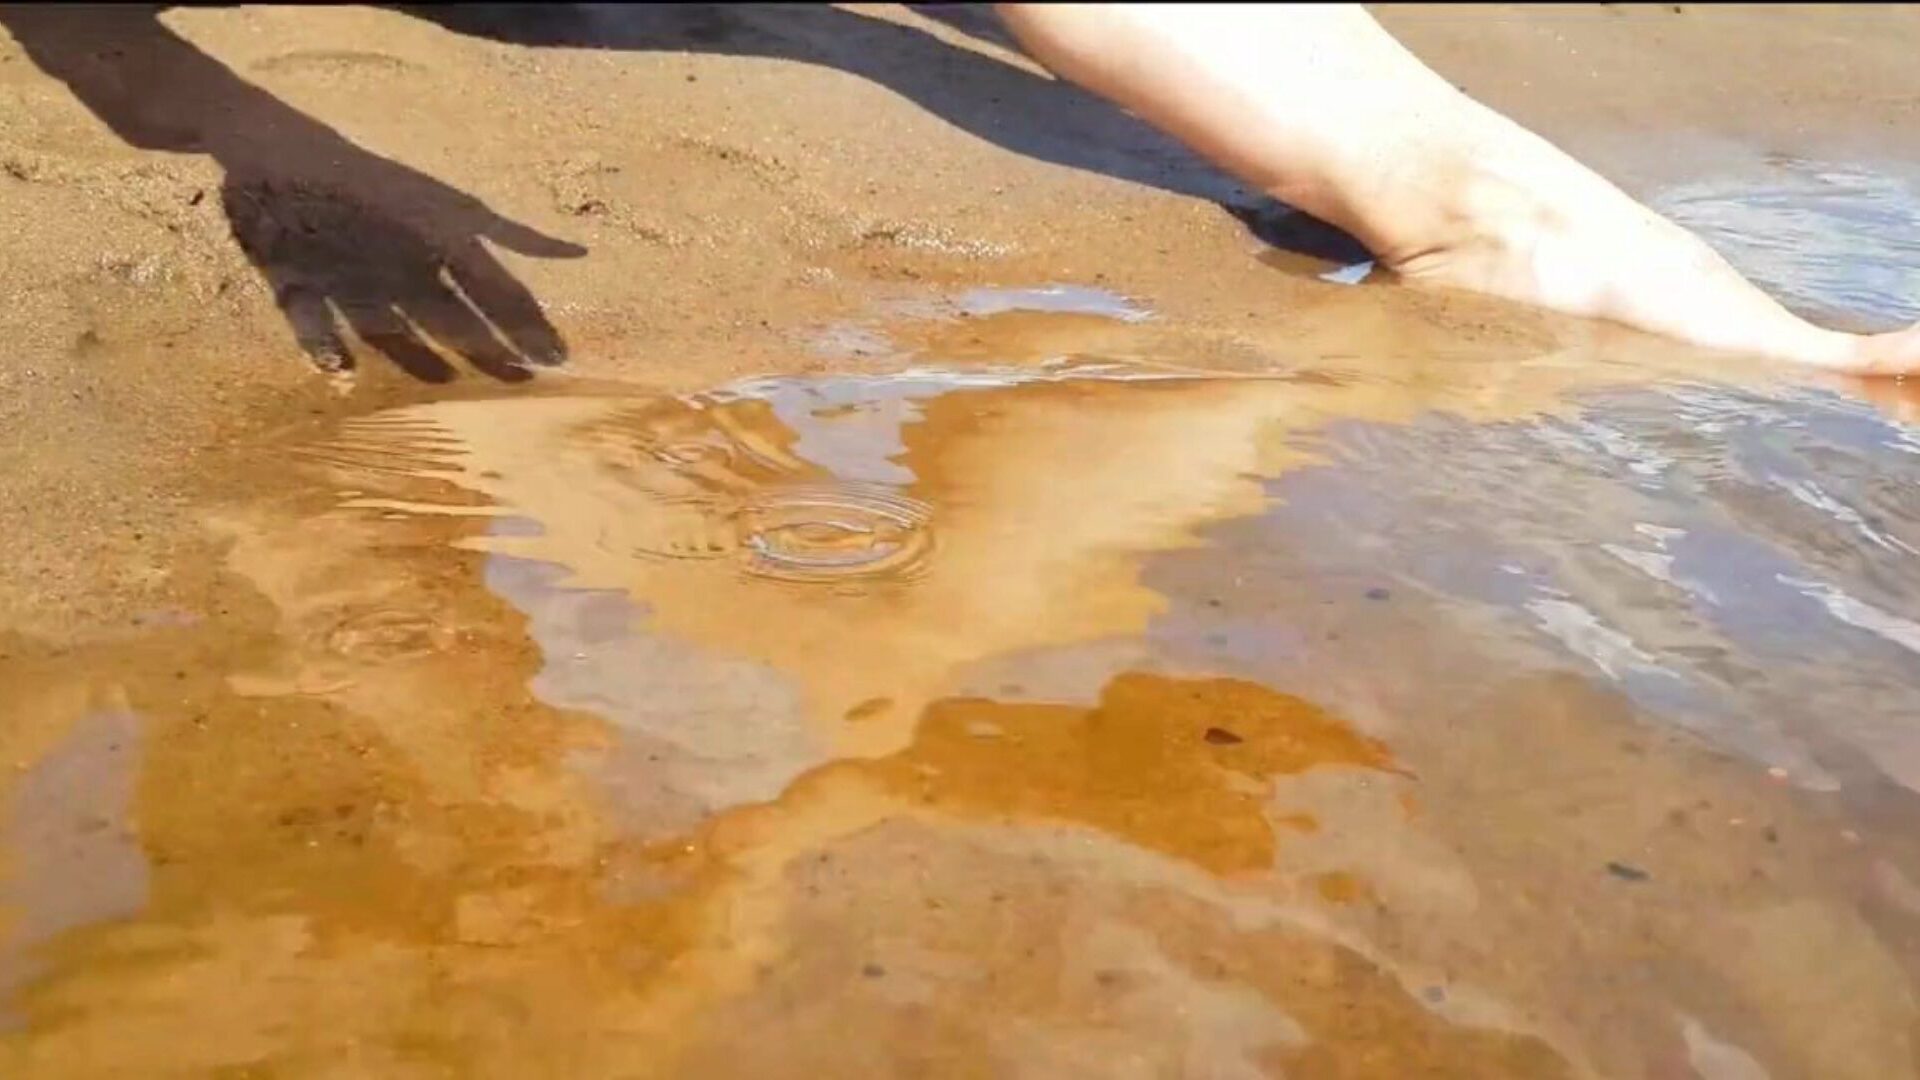 έφηβος δάχτυλο σε μια δημόσια παραλία και παίρνει έναν πραγματικό δροσερό οργασμό - σφιχτό μουνί playkitty ultra hd 4k